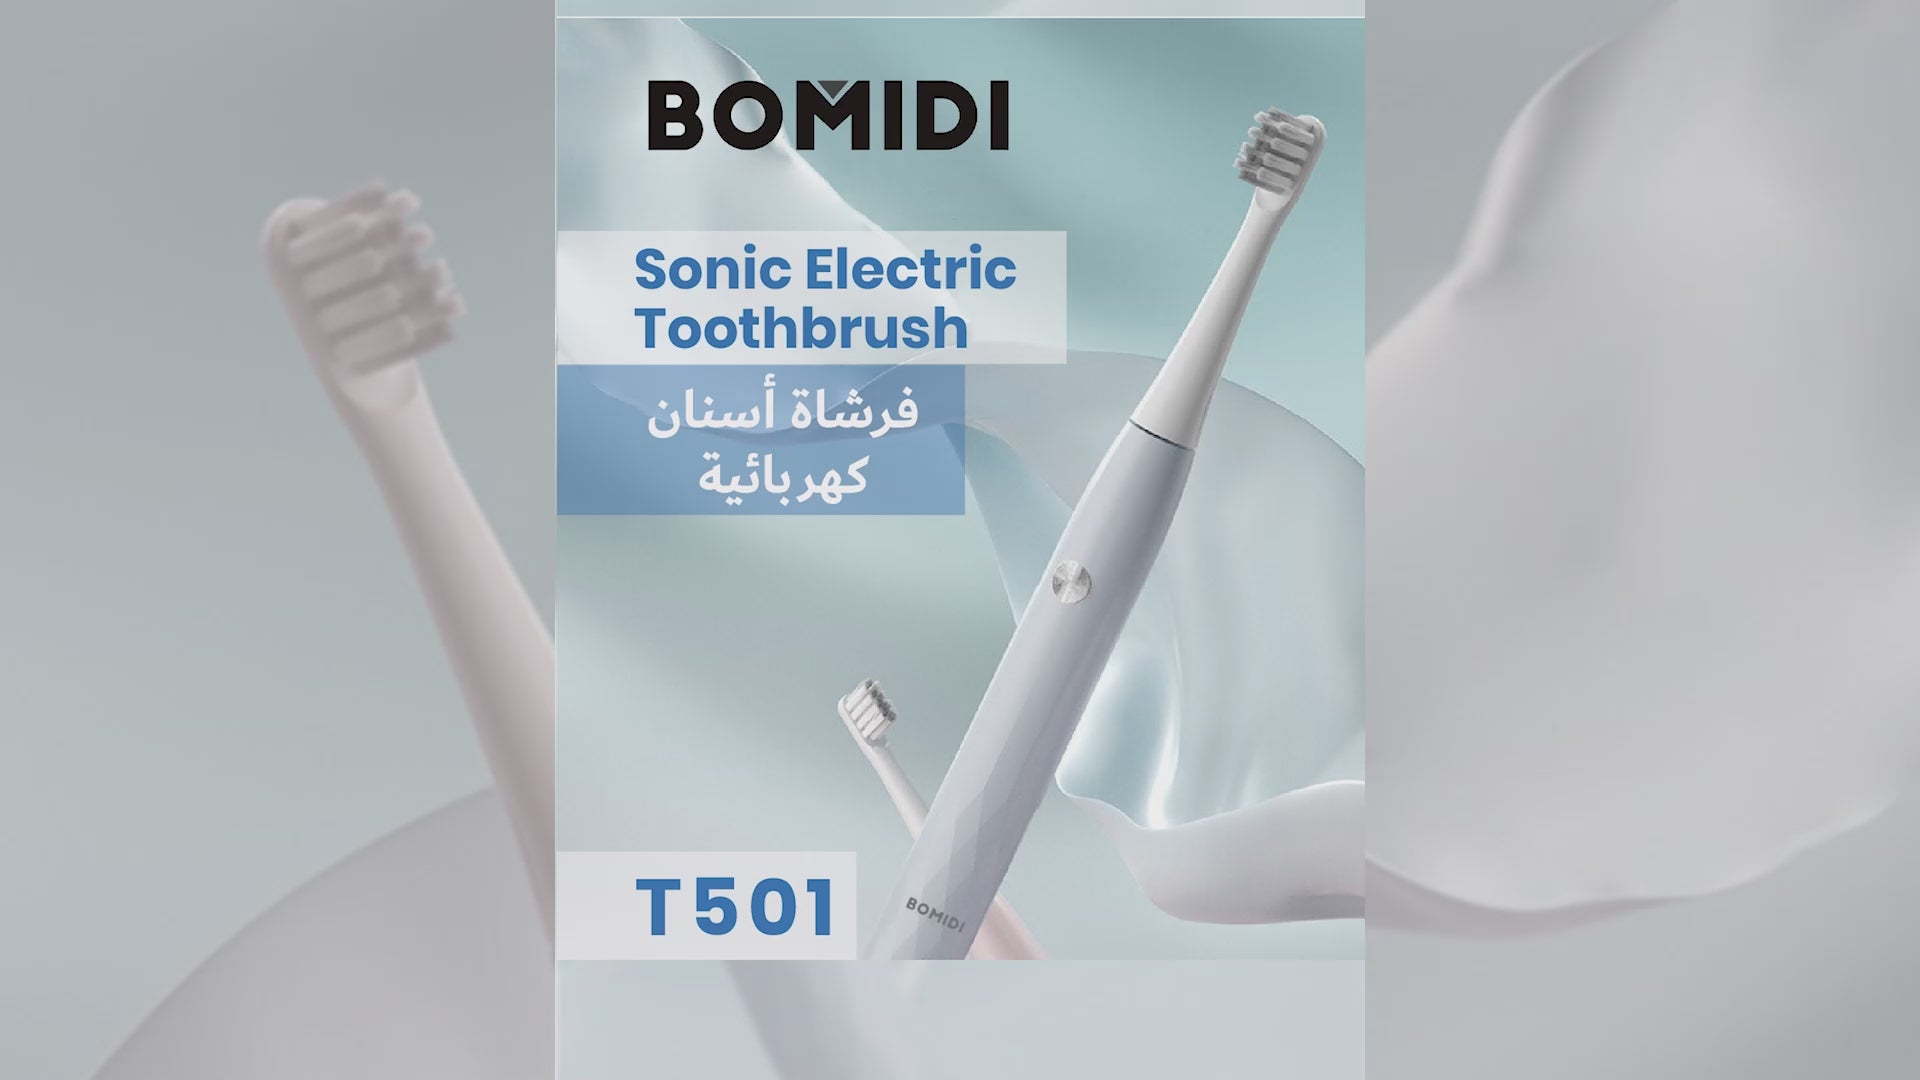 رؤوس بديلة لفرشاة الأسنان الكهربائية من بوميدي T501، عبوة واحدة (قطعتان من رؤوس الفرشاة) - أبيض